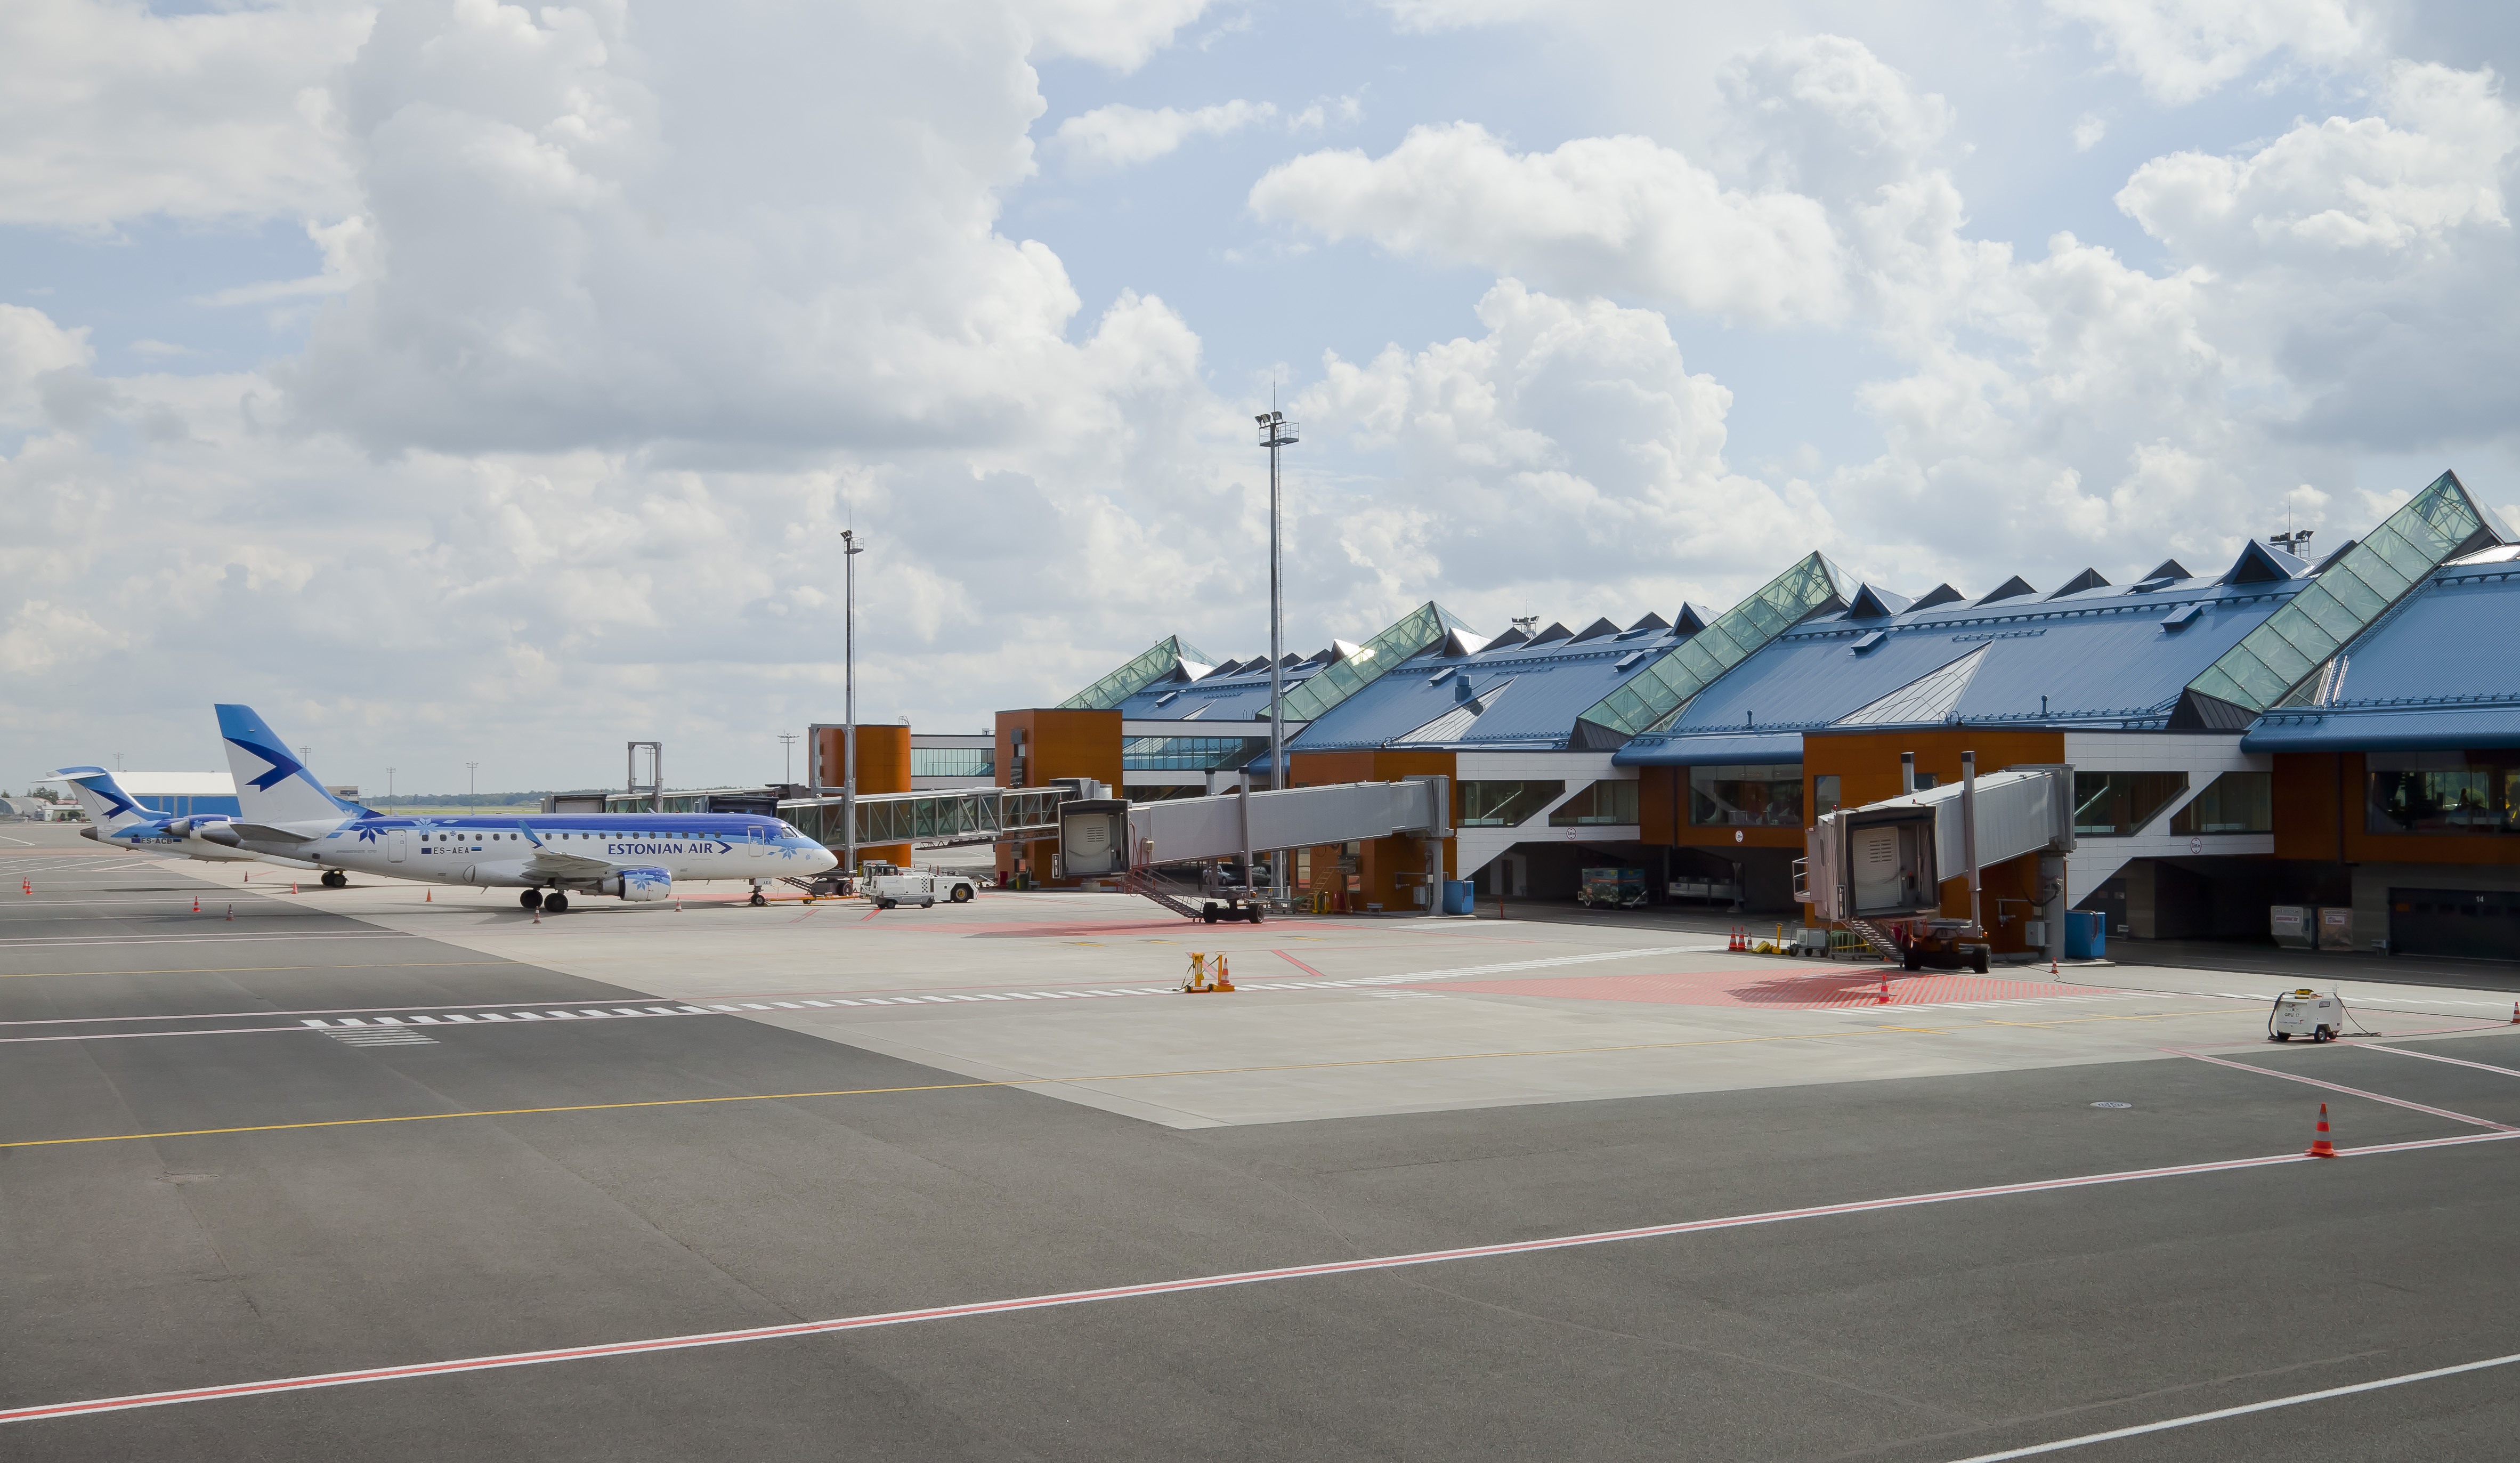 Aeropuerto Internacional de Tallinn, Estonia, 2012-08-05, DD 04